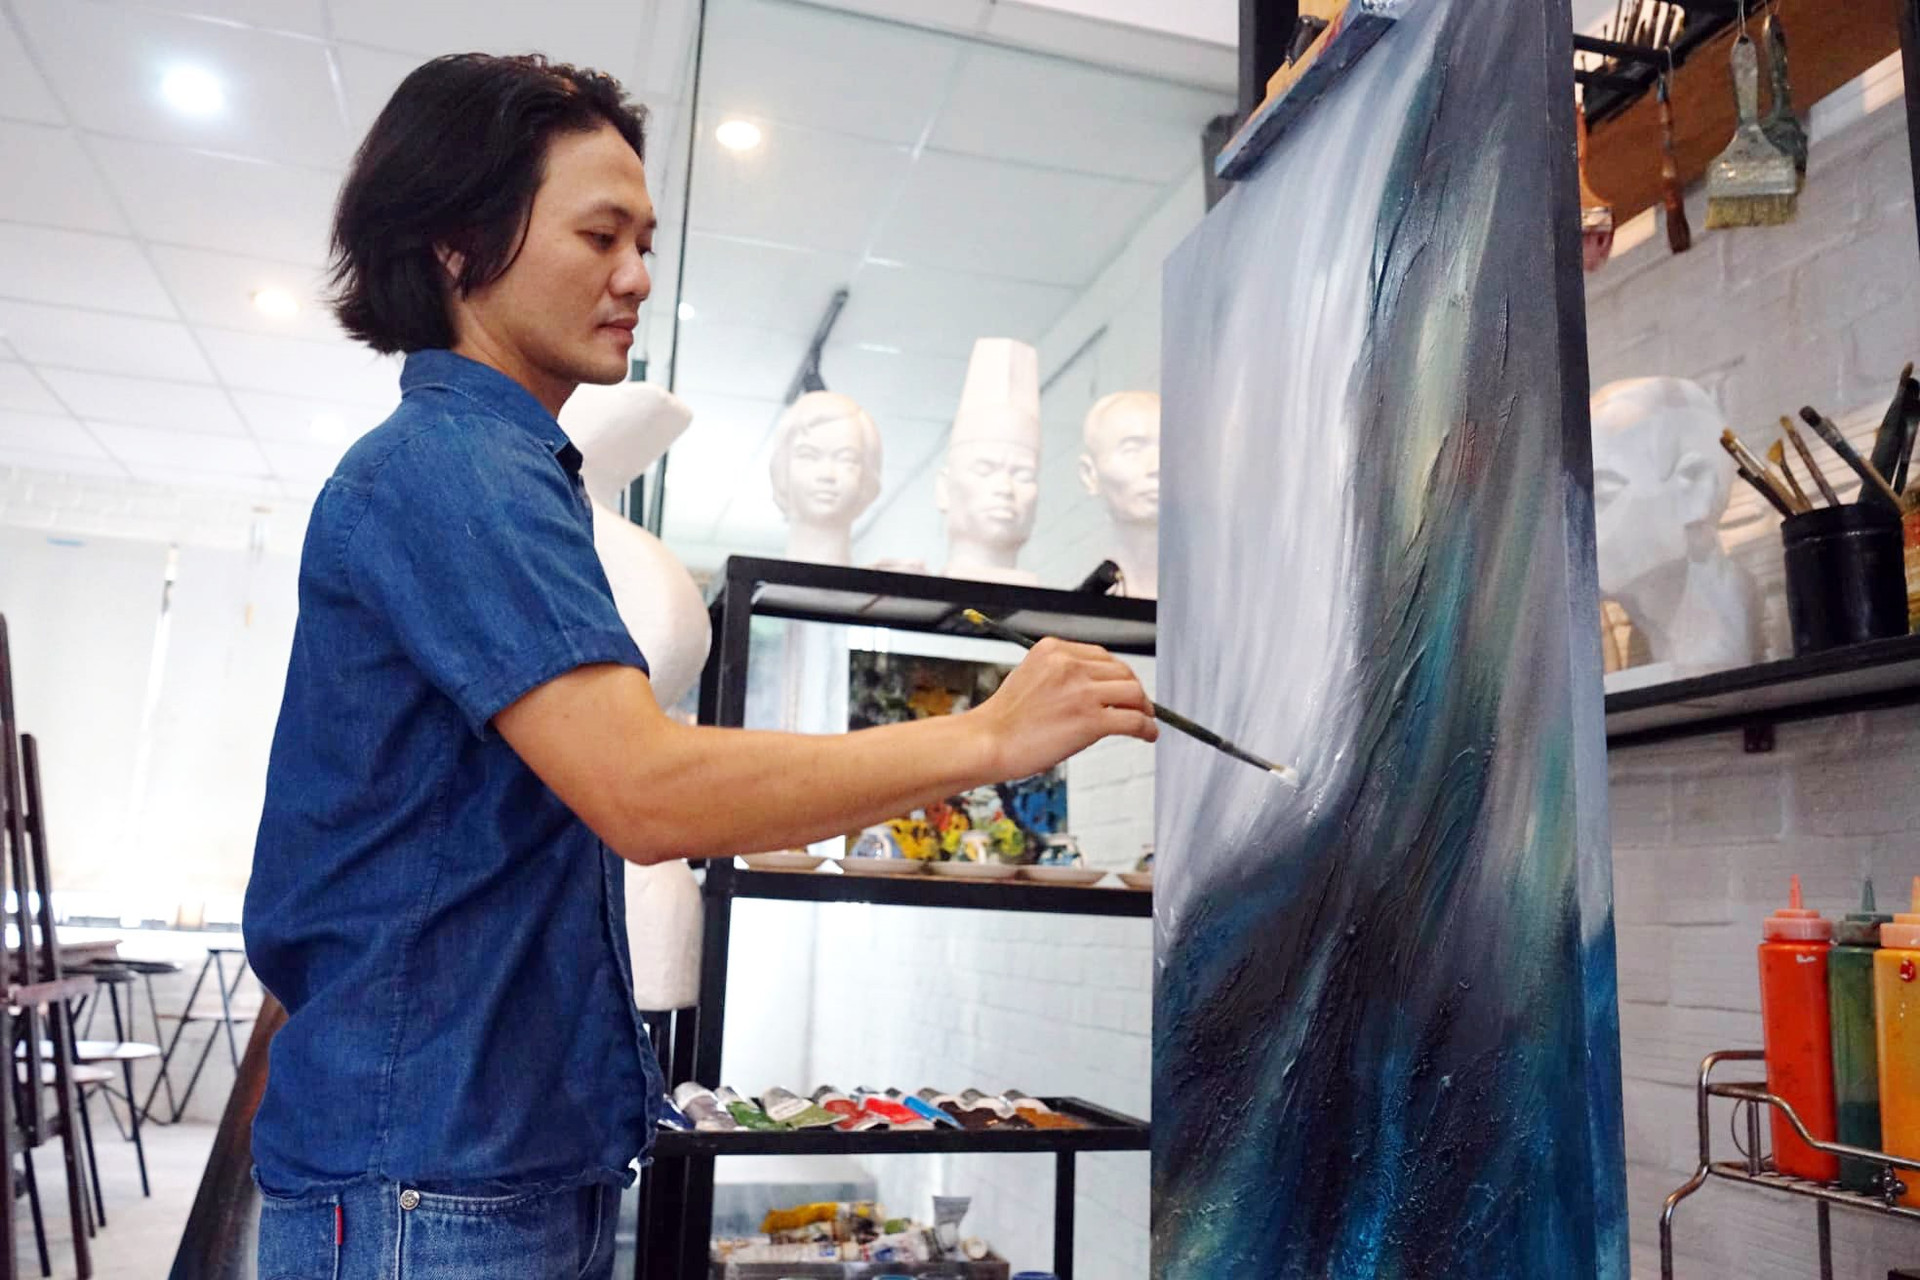 Họa sĩ Huỳnh Công Thành tại xưởng vẽ của mình.